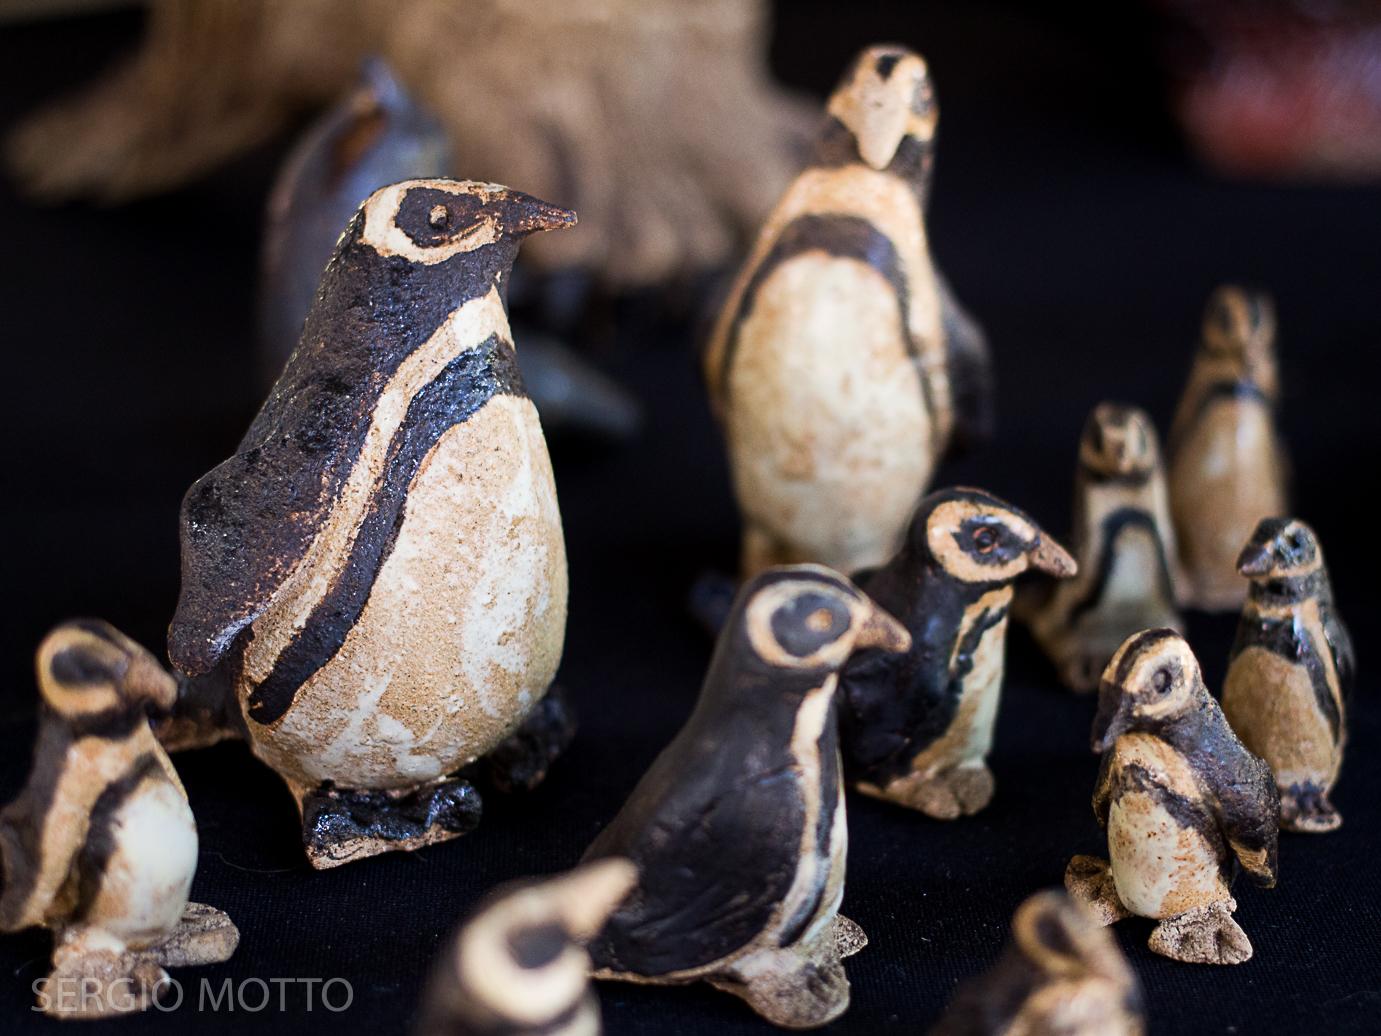 representación de pinguinos en cerámica